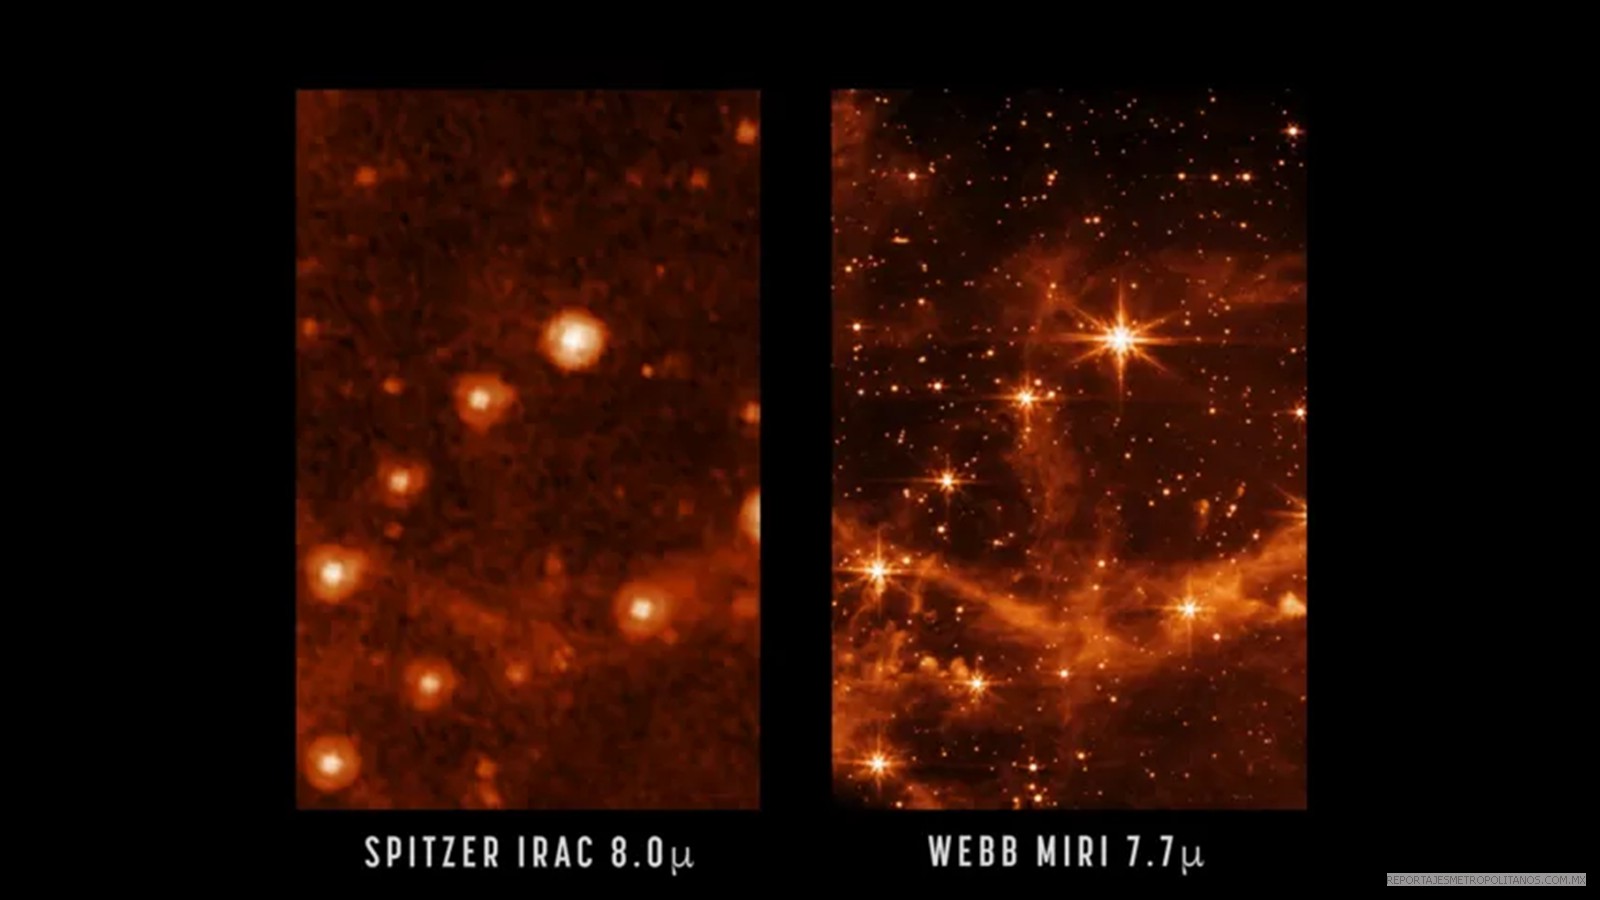 El James Webb obtuvo las imágenes más nítidas  logradas por un telescopio espacial en la historia, según la NASA.